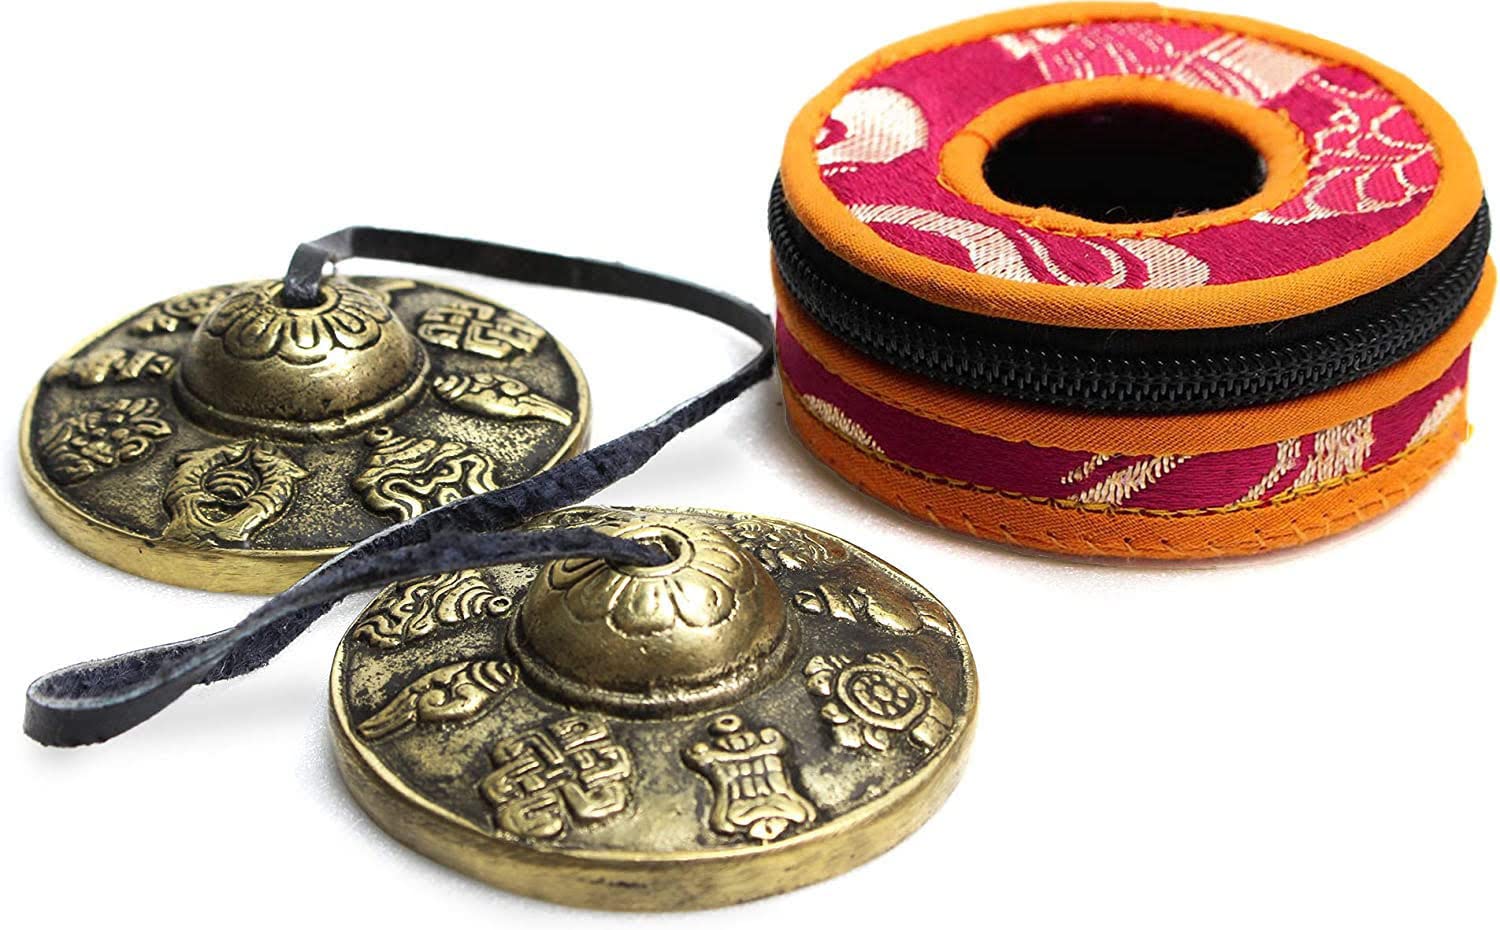 透き通る音色 チベタンベル ヨガ 瞑想 ティンシャベル チベット ベル チベットベル チベタンシンバル 打楽器 治癒 風水 ティンシャ 密教